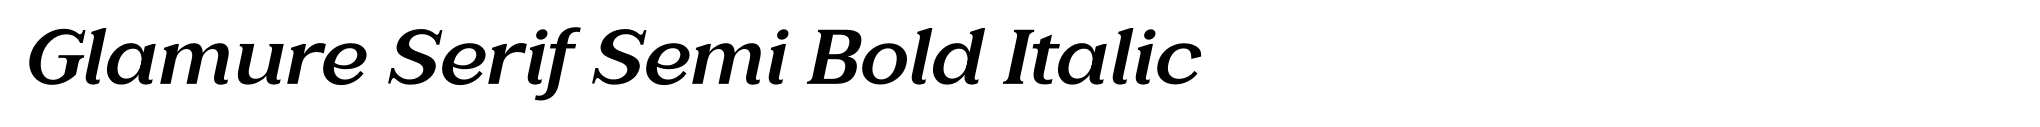 Glamure Serif Semi Bold Italic image